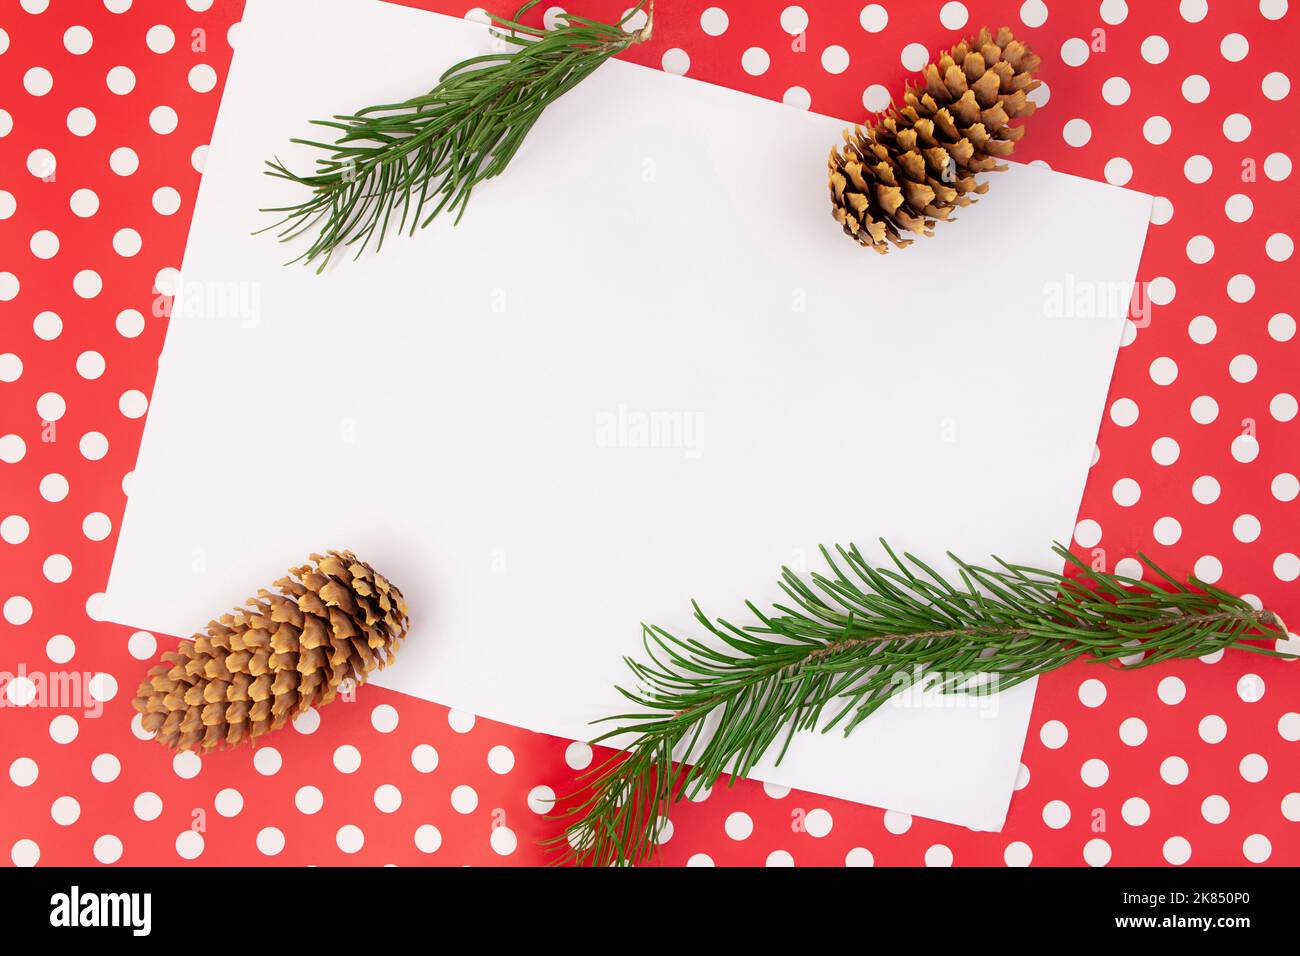 Rametti e coni di abete su sfondo rosso con punto di polka e foglio bianco per il testo. Natale, Capodanno, autunno, inverno. Spazio di copia Foto Stock